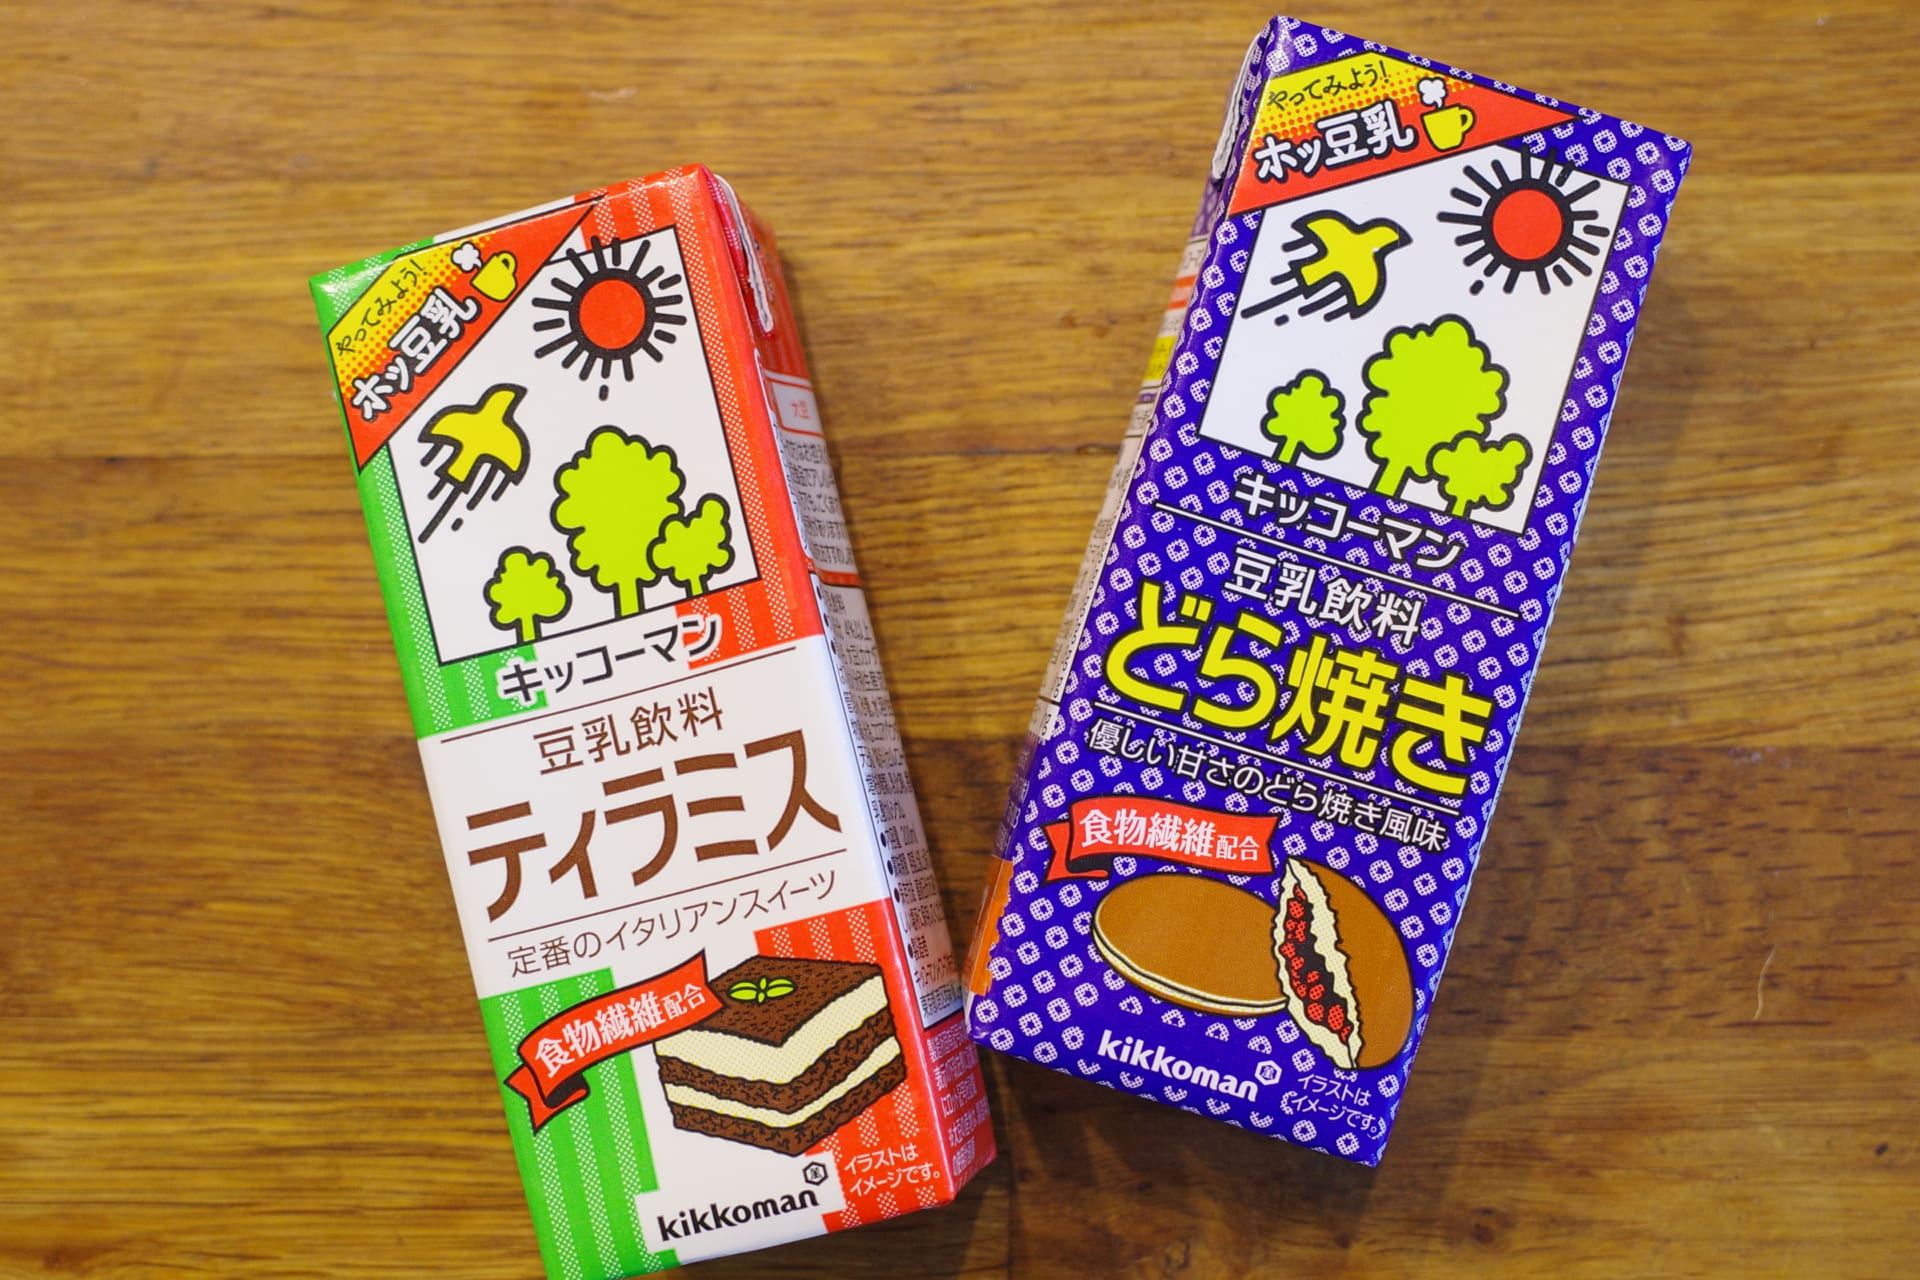 【衝撃】キッコーマン新作豆乳「ティラミス・どら焼き」ってどんな味!?